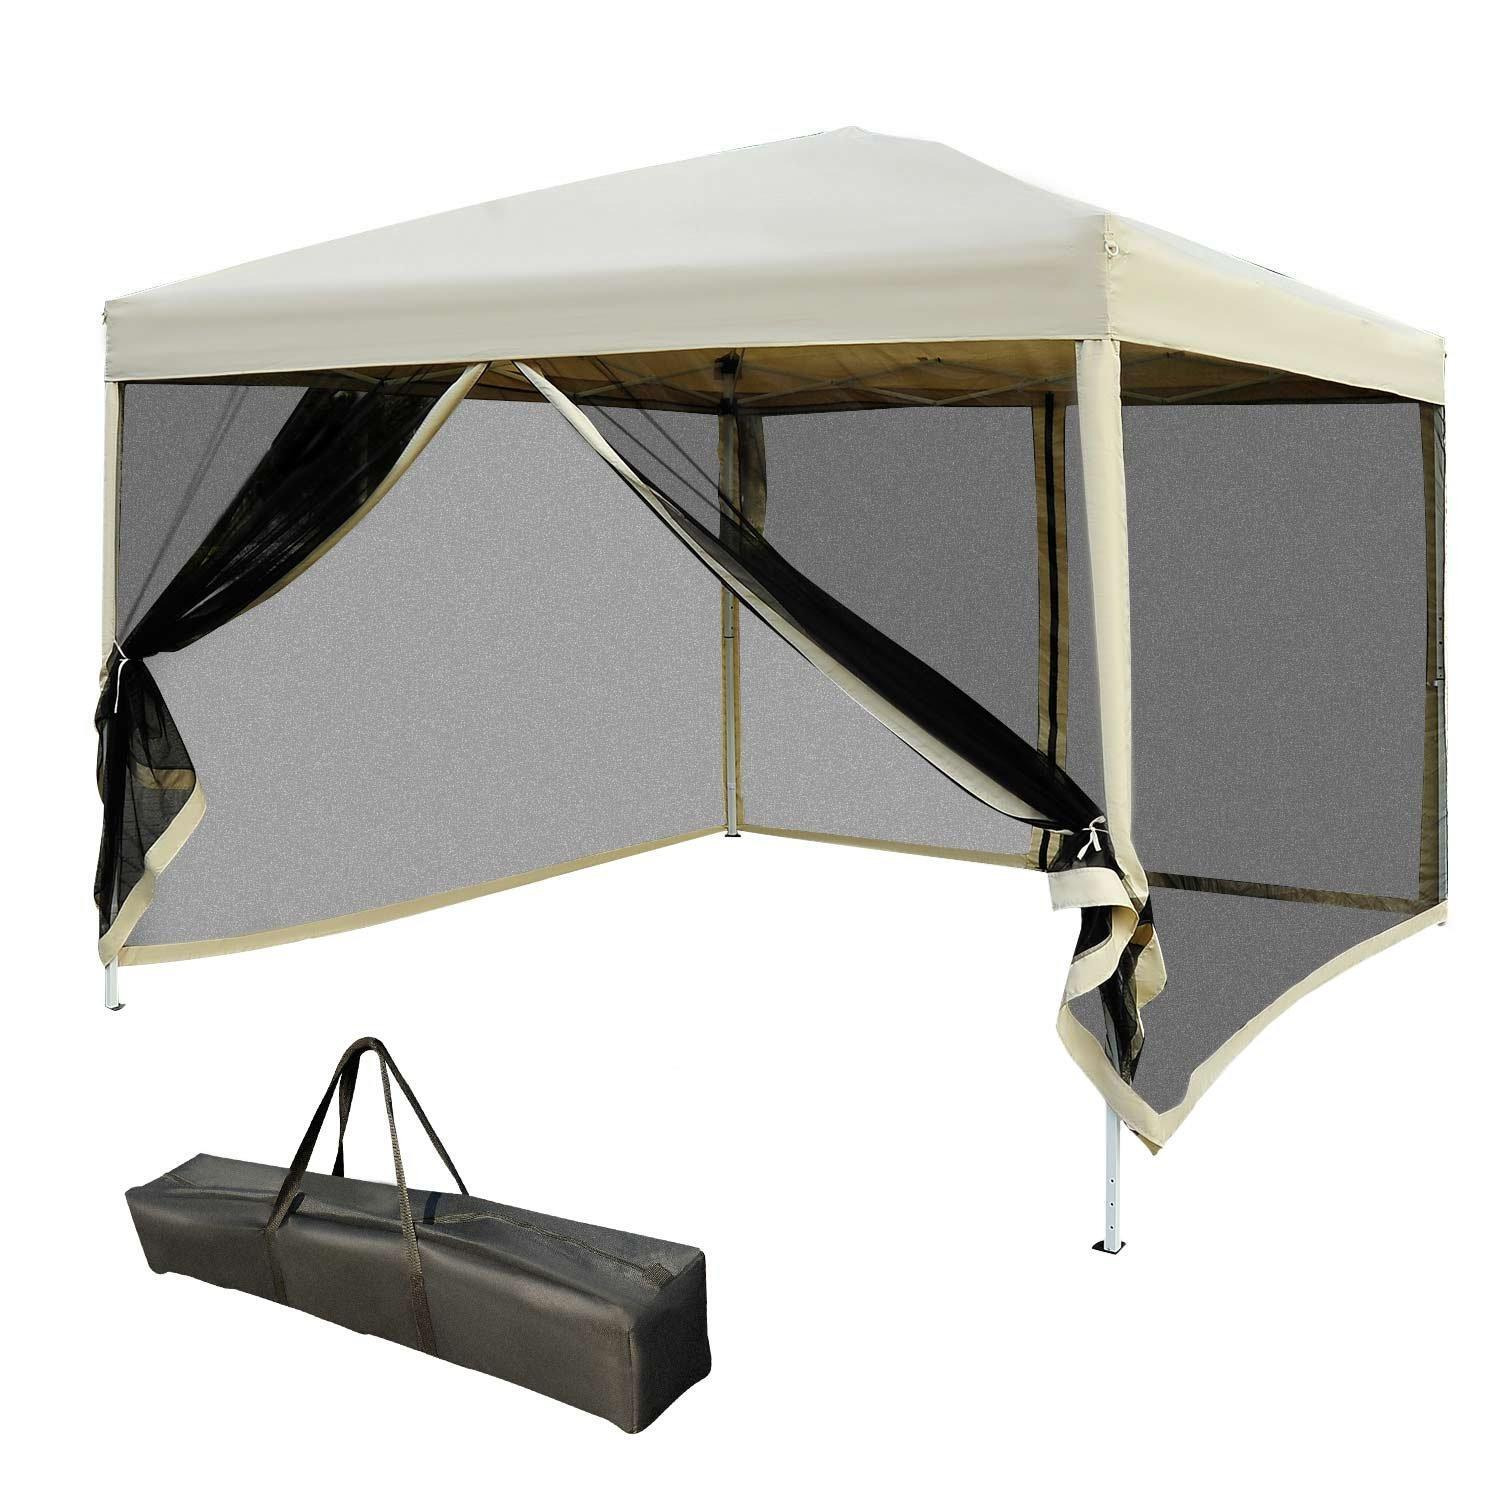 2.97 x 2.97m Gazebo Canopy Pop Up Tent Mesh Screen Garden Shade Mesh - image 1